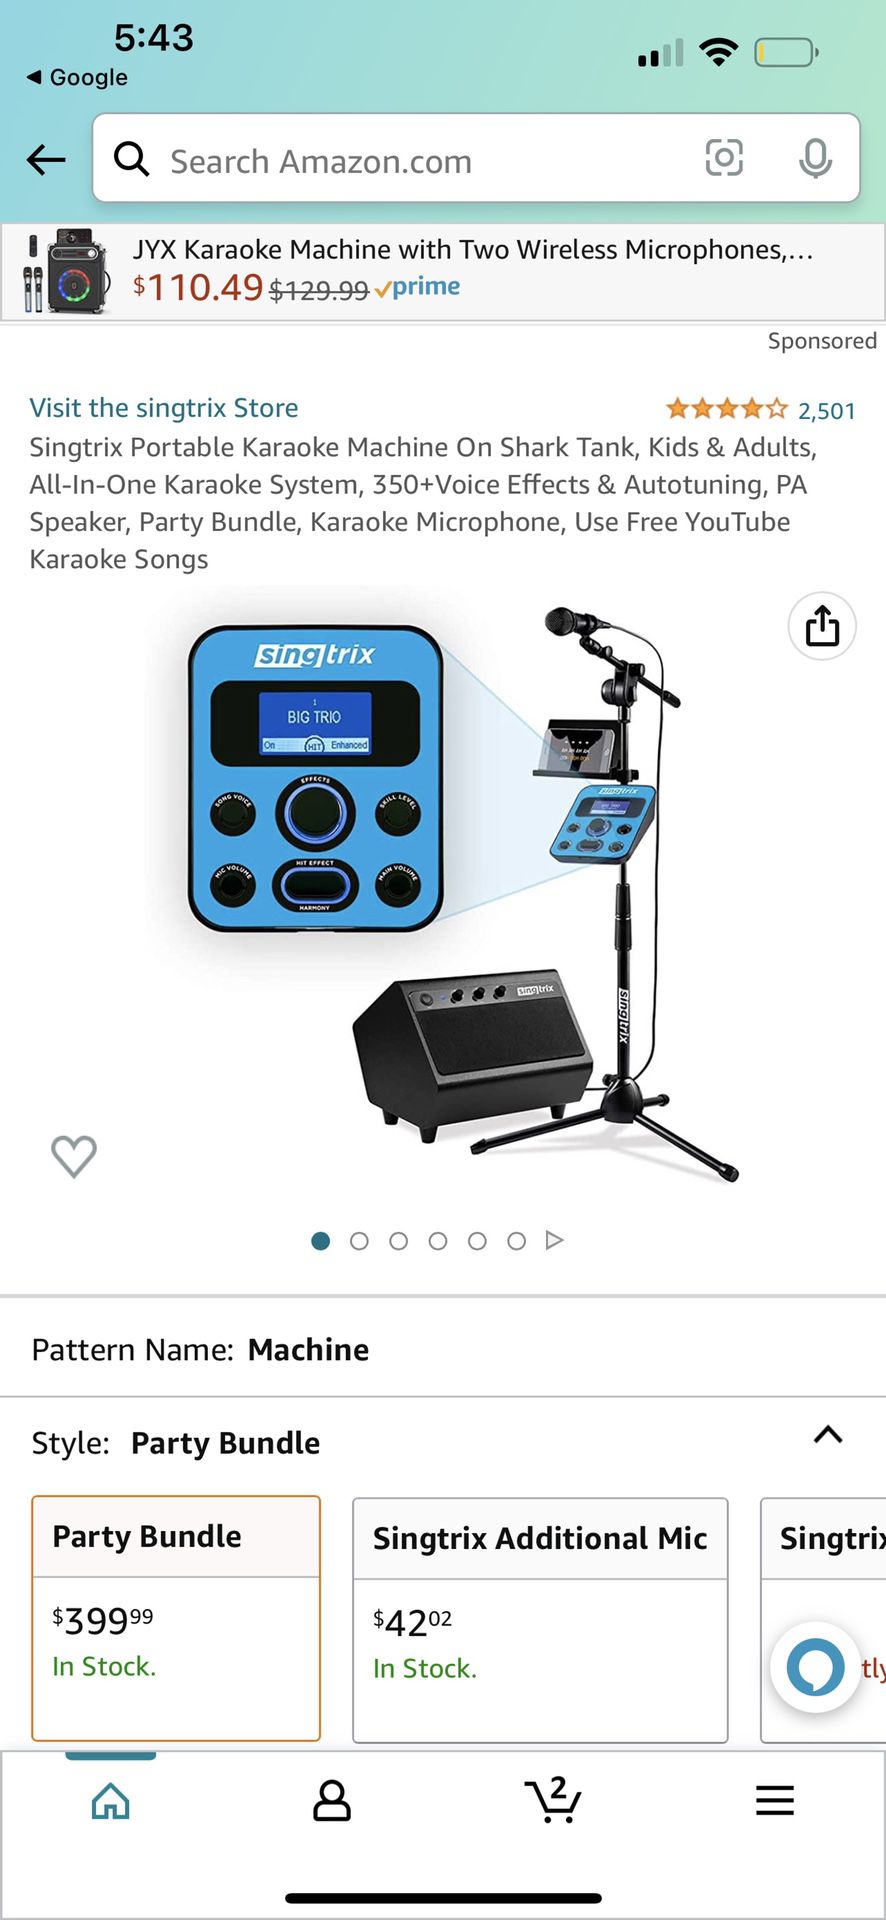 Singtrix Portable Karaoke Machine On Shark Tank, Kids & Adults, All-In-One Karaoke System, 350+Voice Effects & Autotuning, PA Speaker, Party Bundle, K